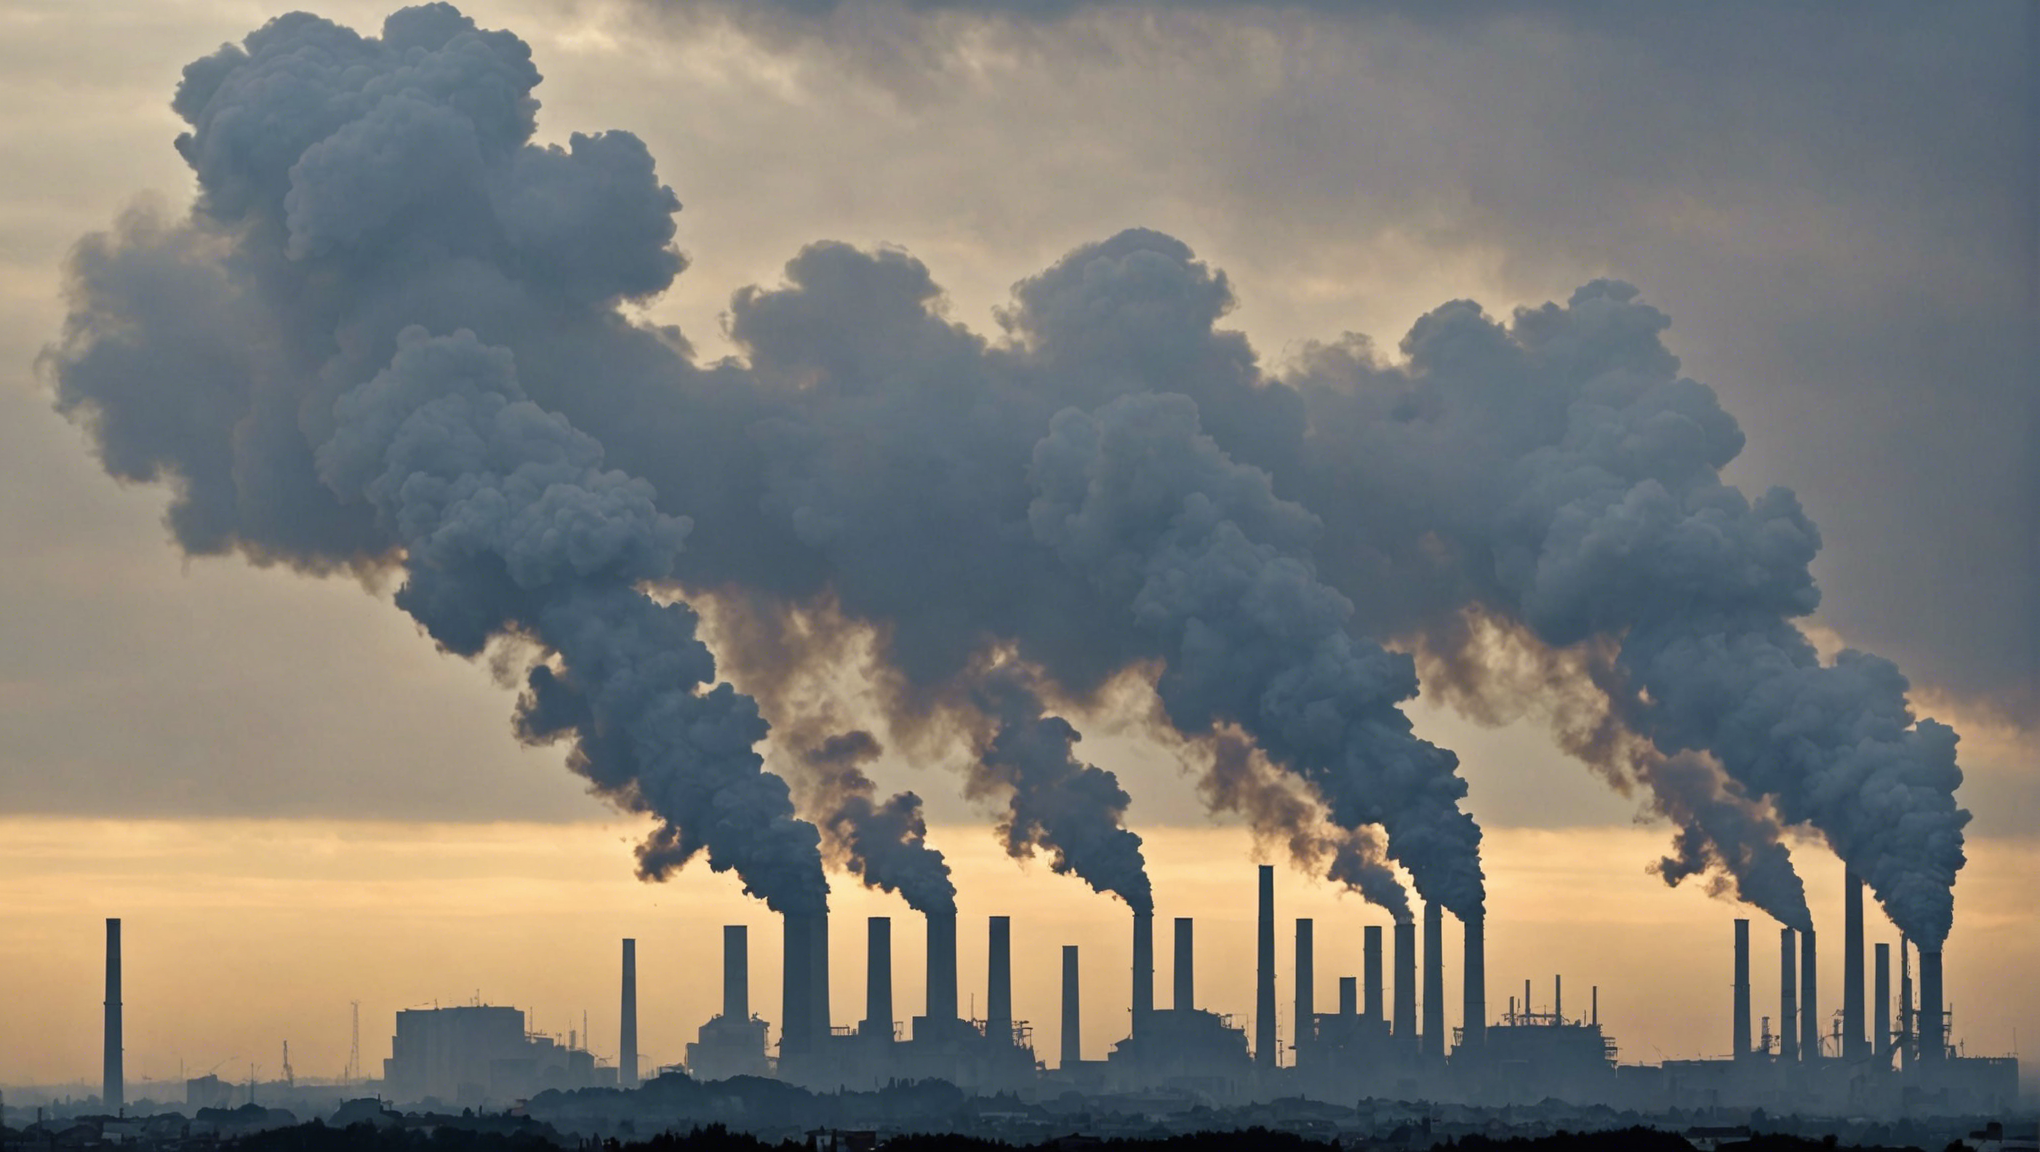 découvrez les principaux polluants atmosphériques et leurs impacts sur l'environnement dans notre article sur la pollution atmosphérique.